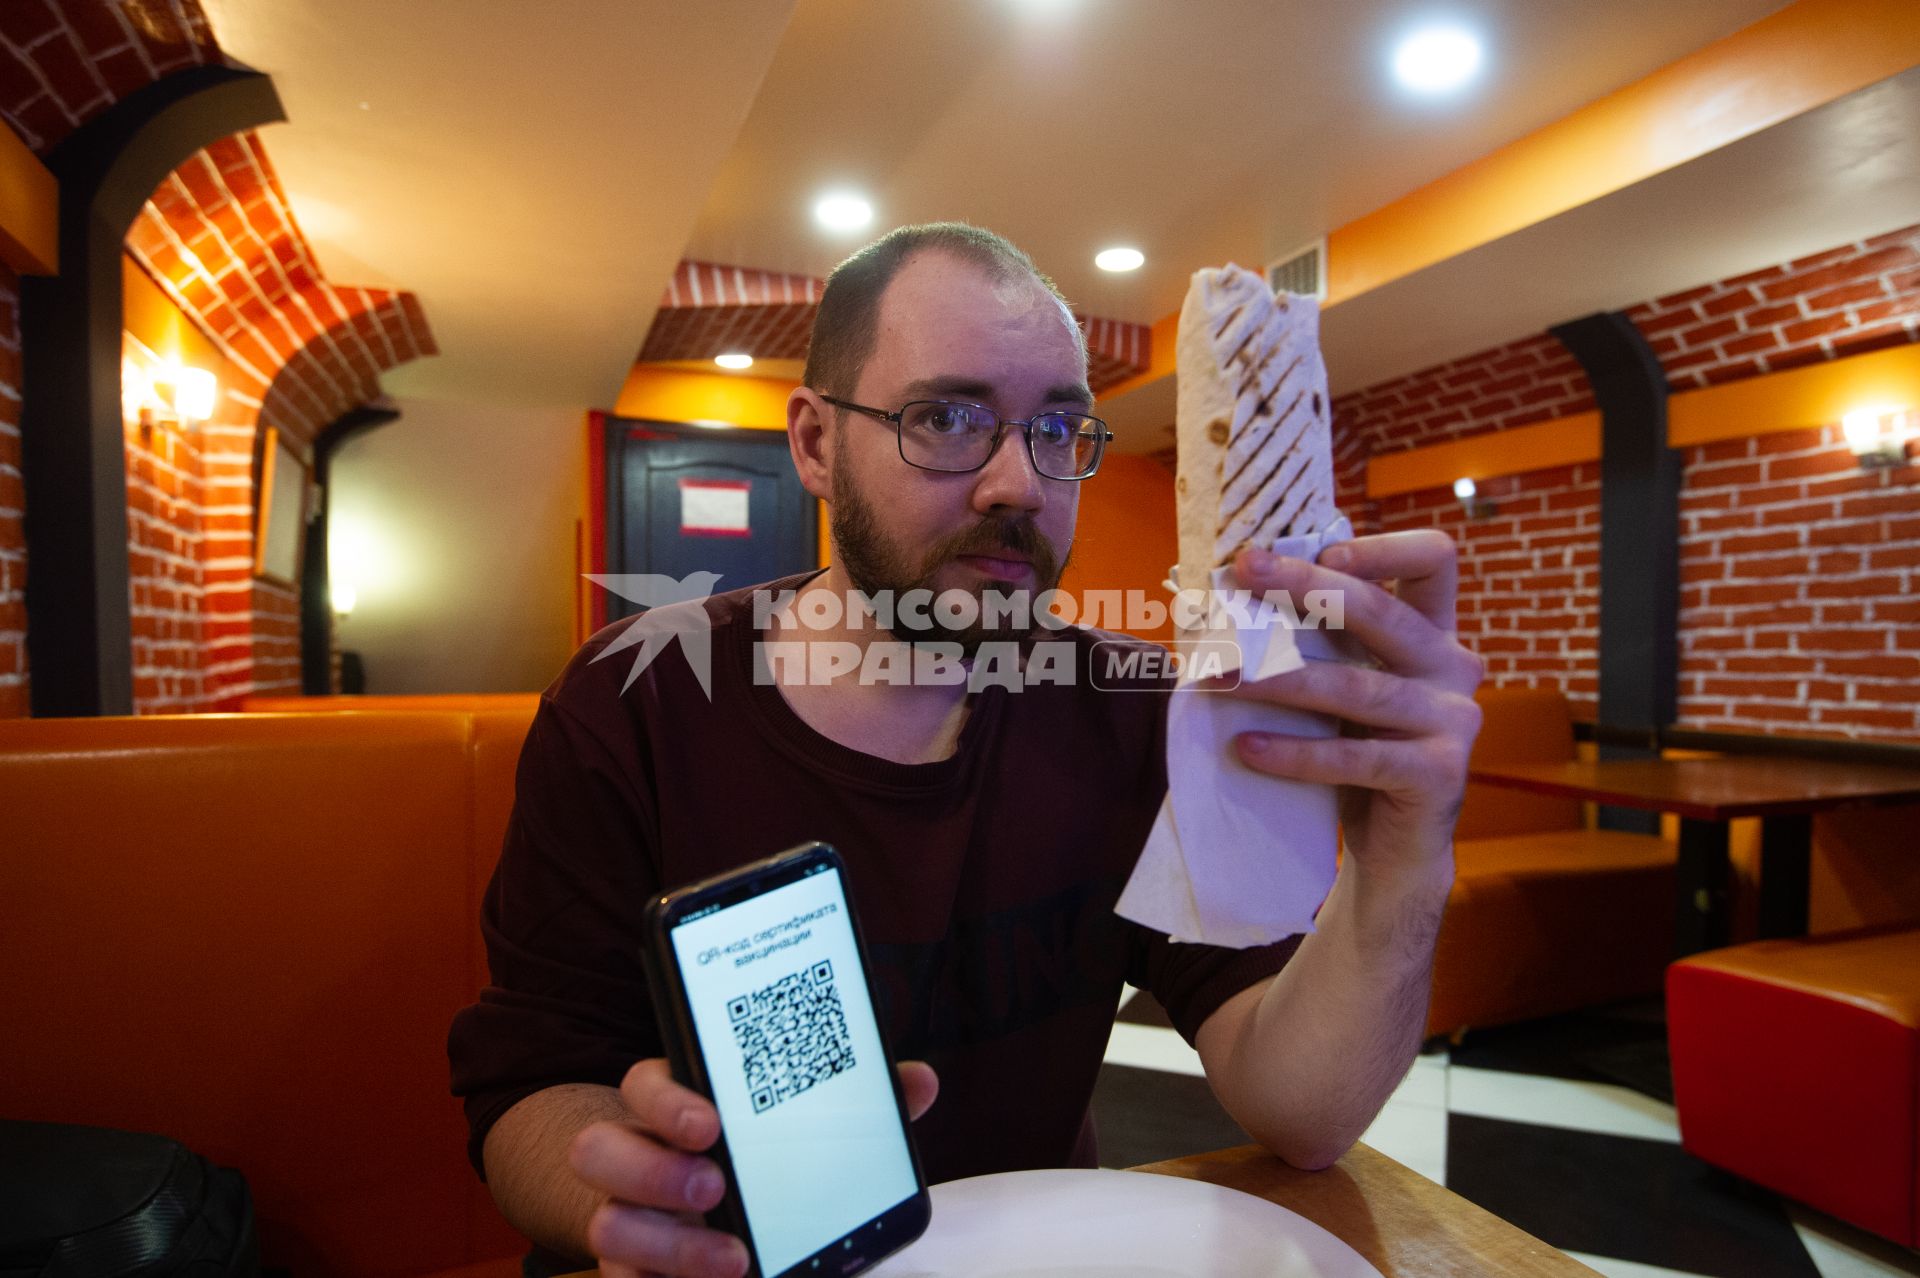 Санкт-Петербург. Мужчина демонстирует QR-код на экране мобильного телефона в кафе.